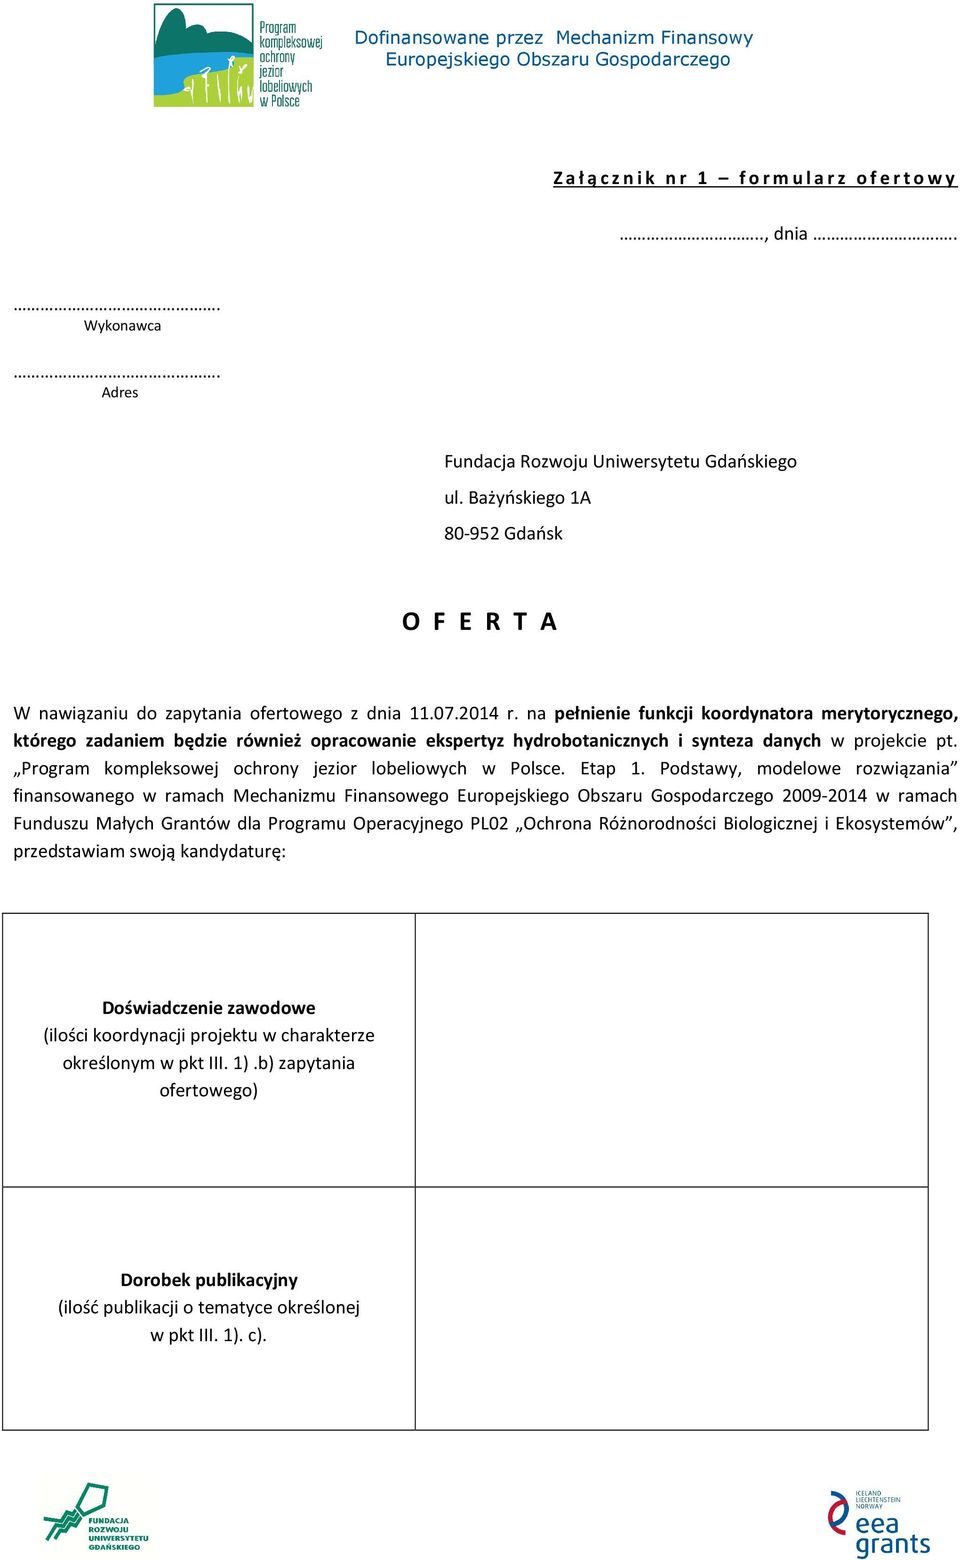 Program kompleksowej ochrony jezior lobeliowych w Polsce. Etap 1.